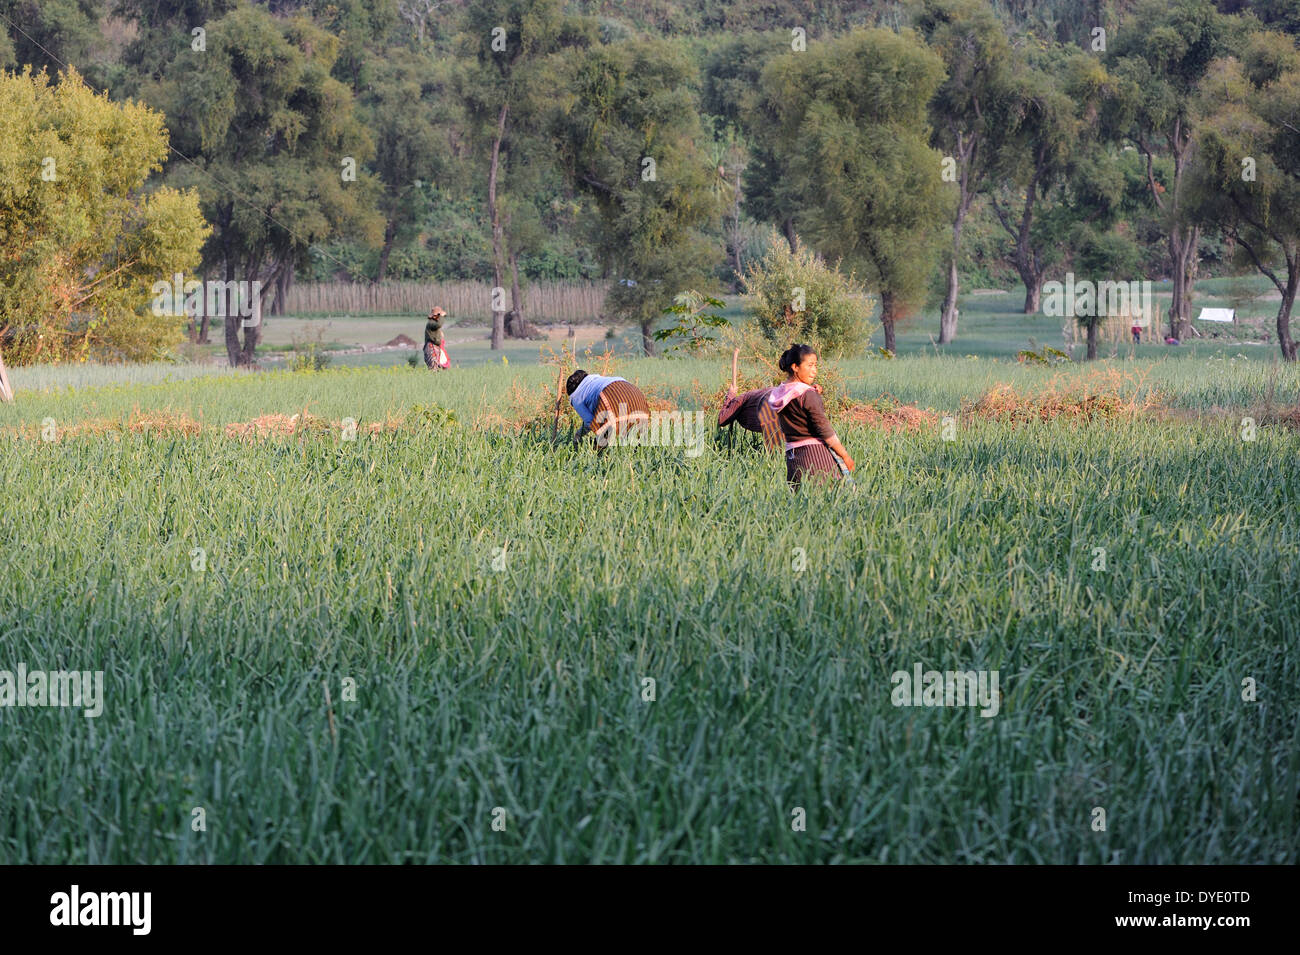 Frauen neigen dazu Zwiebeln wachsen in einem terrassenförmig angelegten, bewässerten Feld am Ufer des Rio Panajachel. Stockfoto